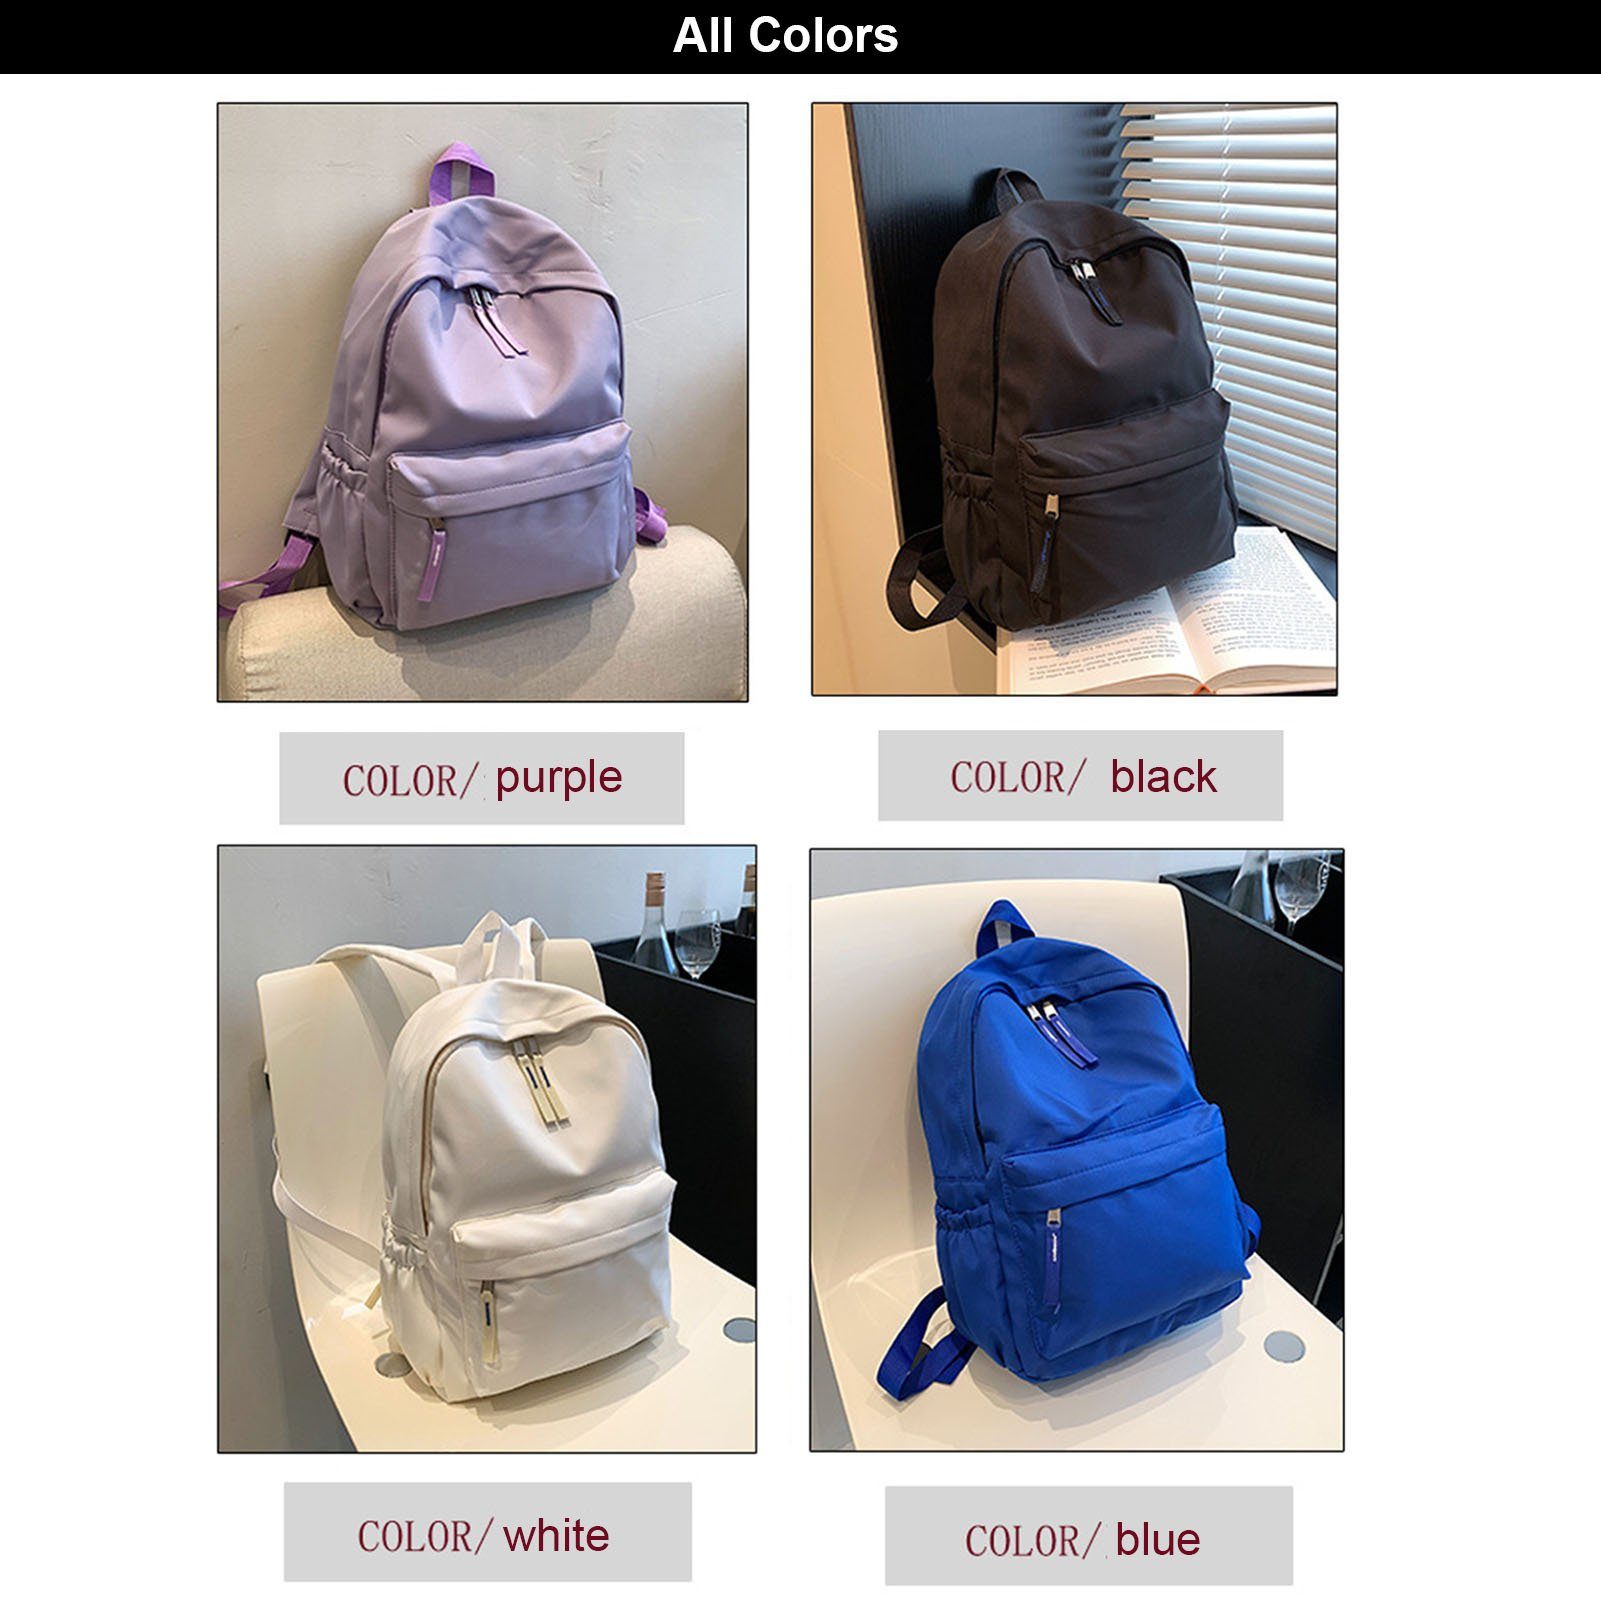 Einfacher Umhängetasche Großer Rucksack Mit Einfarbiger, purple Rucksack, Blusmart Tragbare